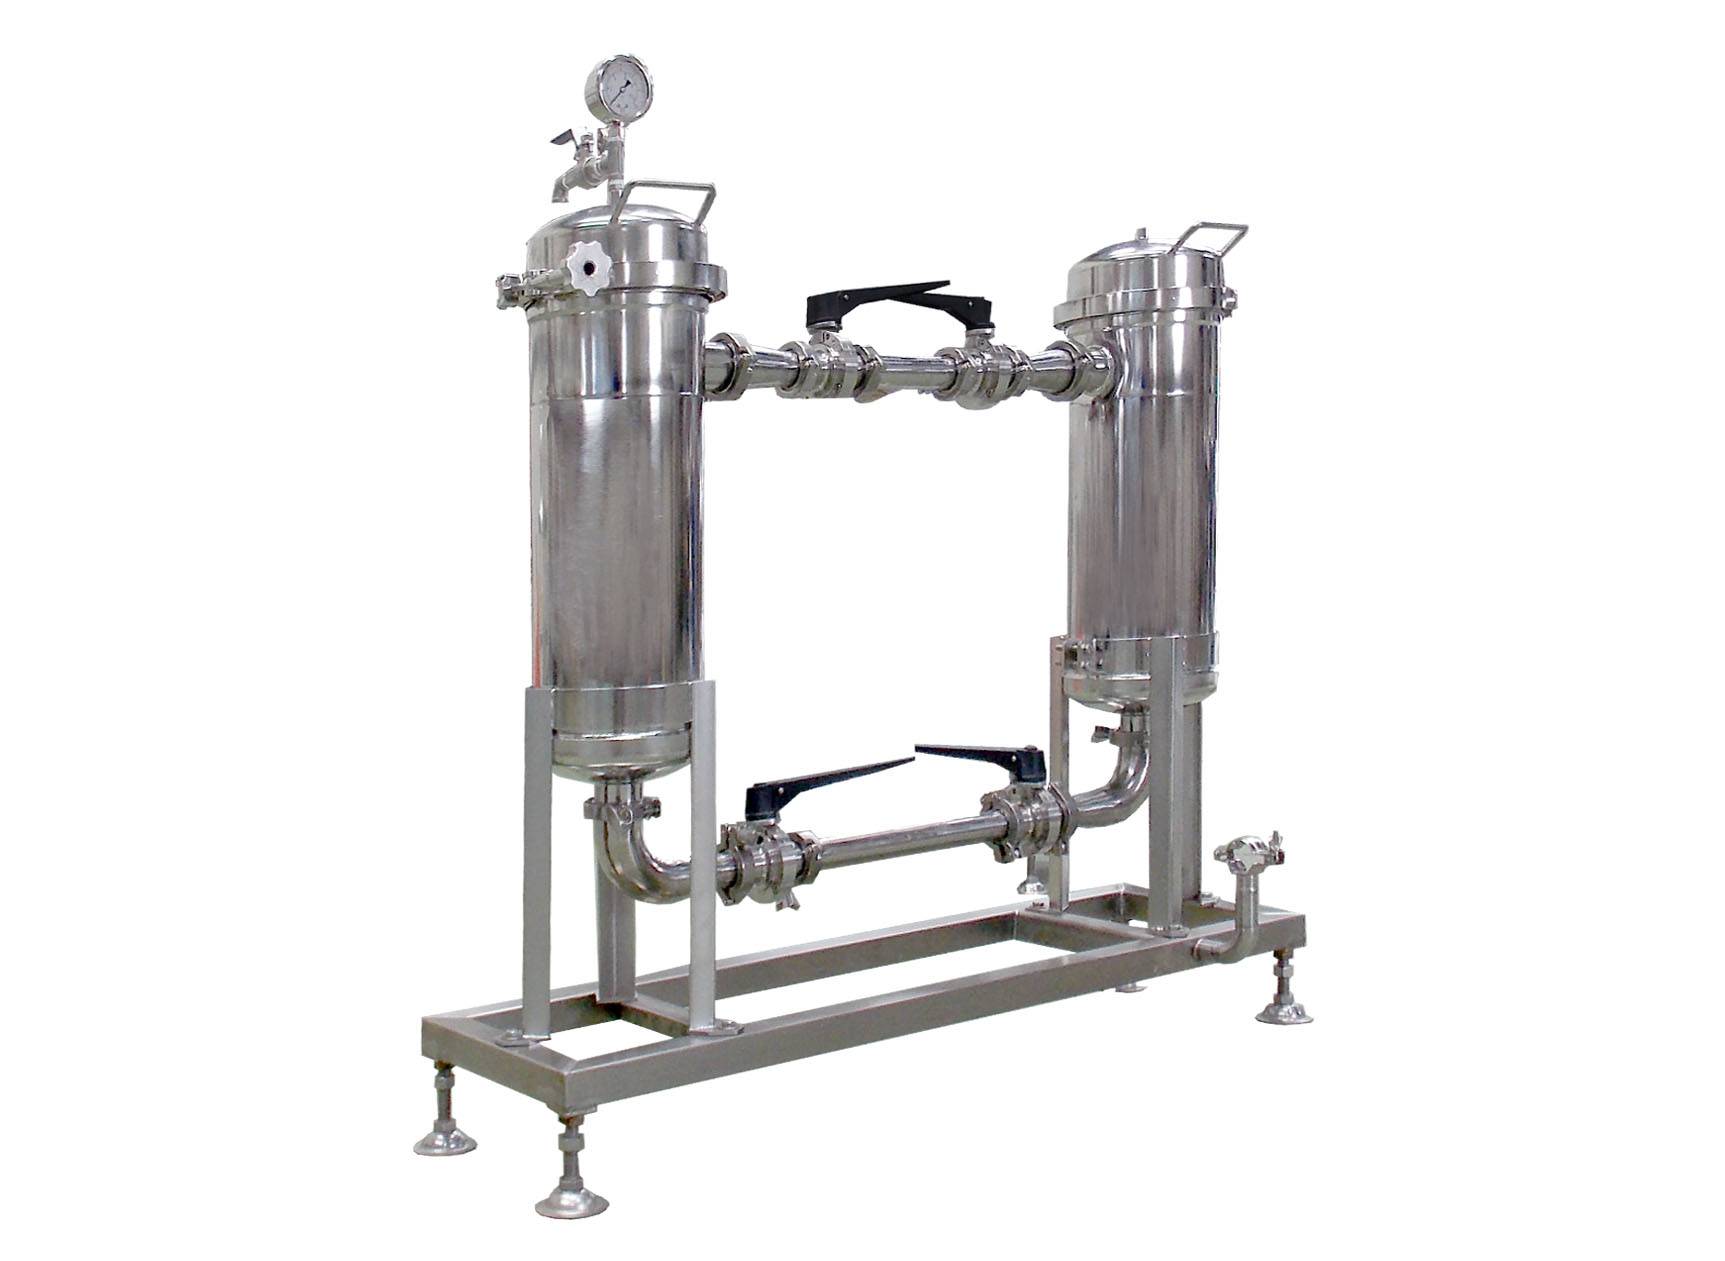 Der Sojamilchfilter ist eine der Maschinen in der Sojamilch-Produktionslinie.